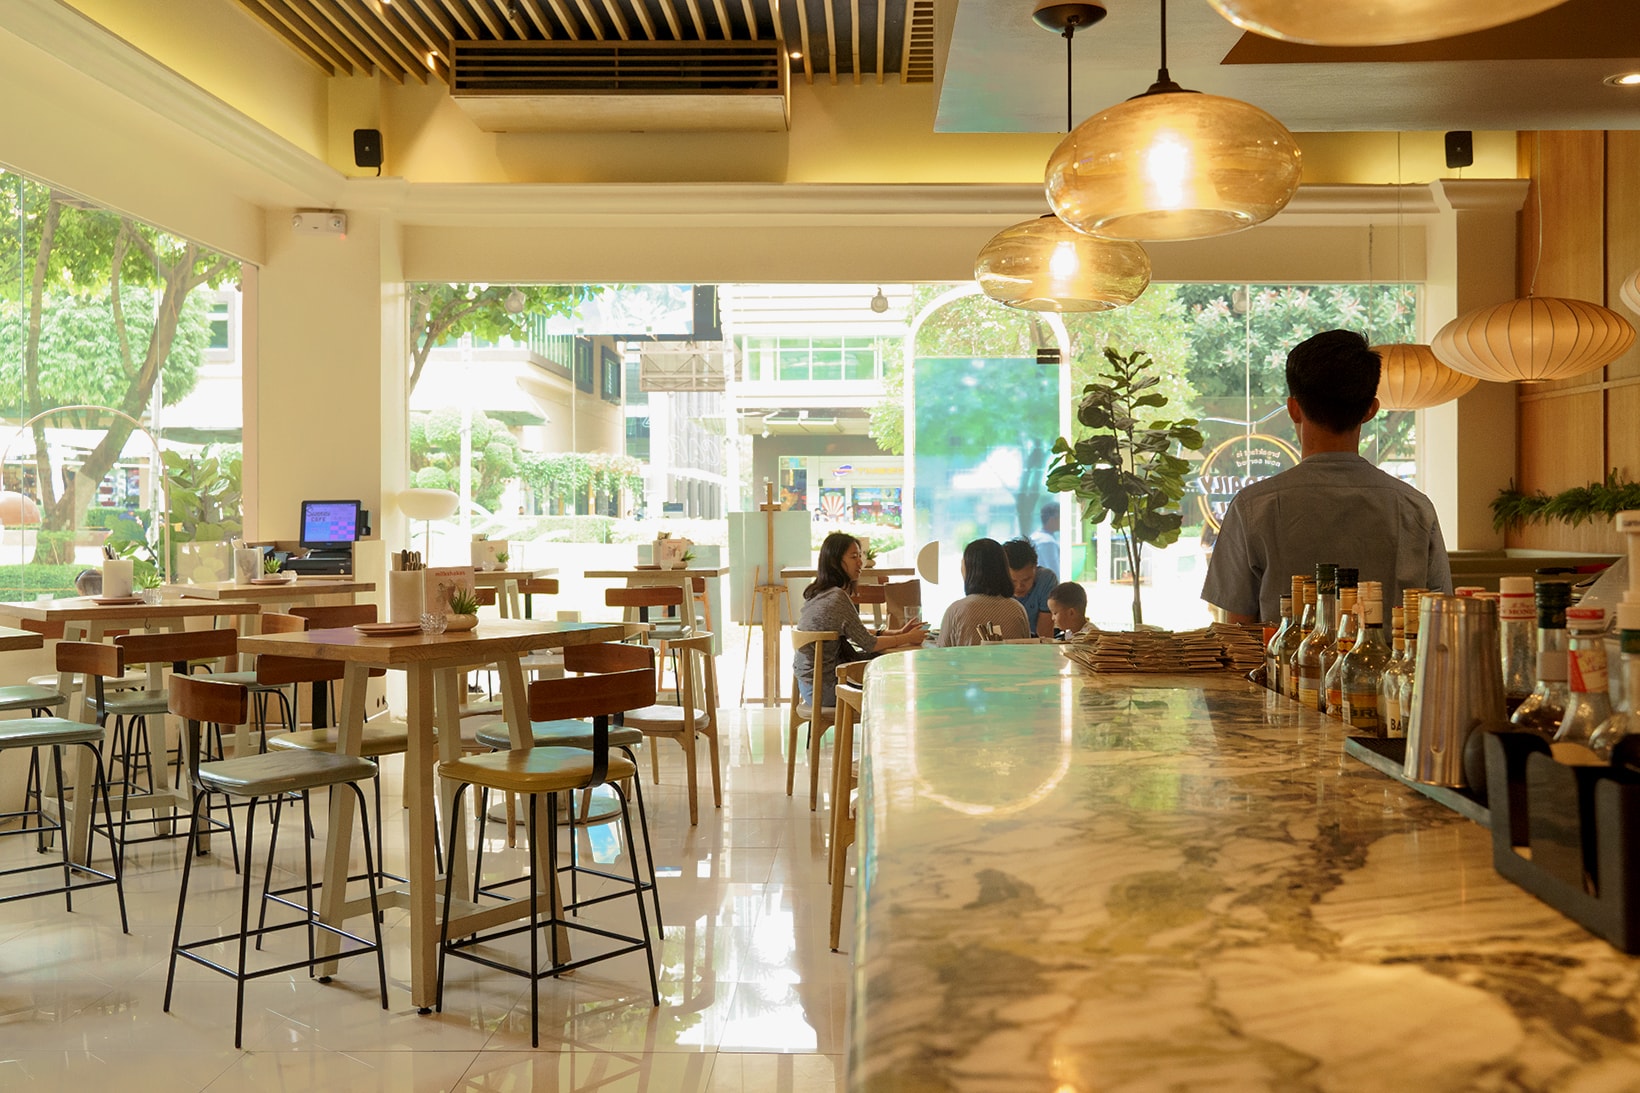 sunnies cafe brunch manila philippines bgc restaurants